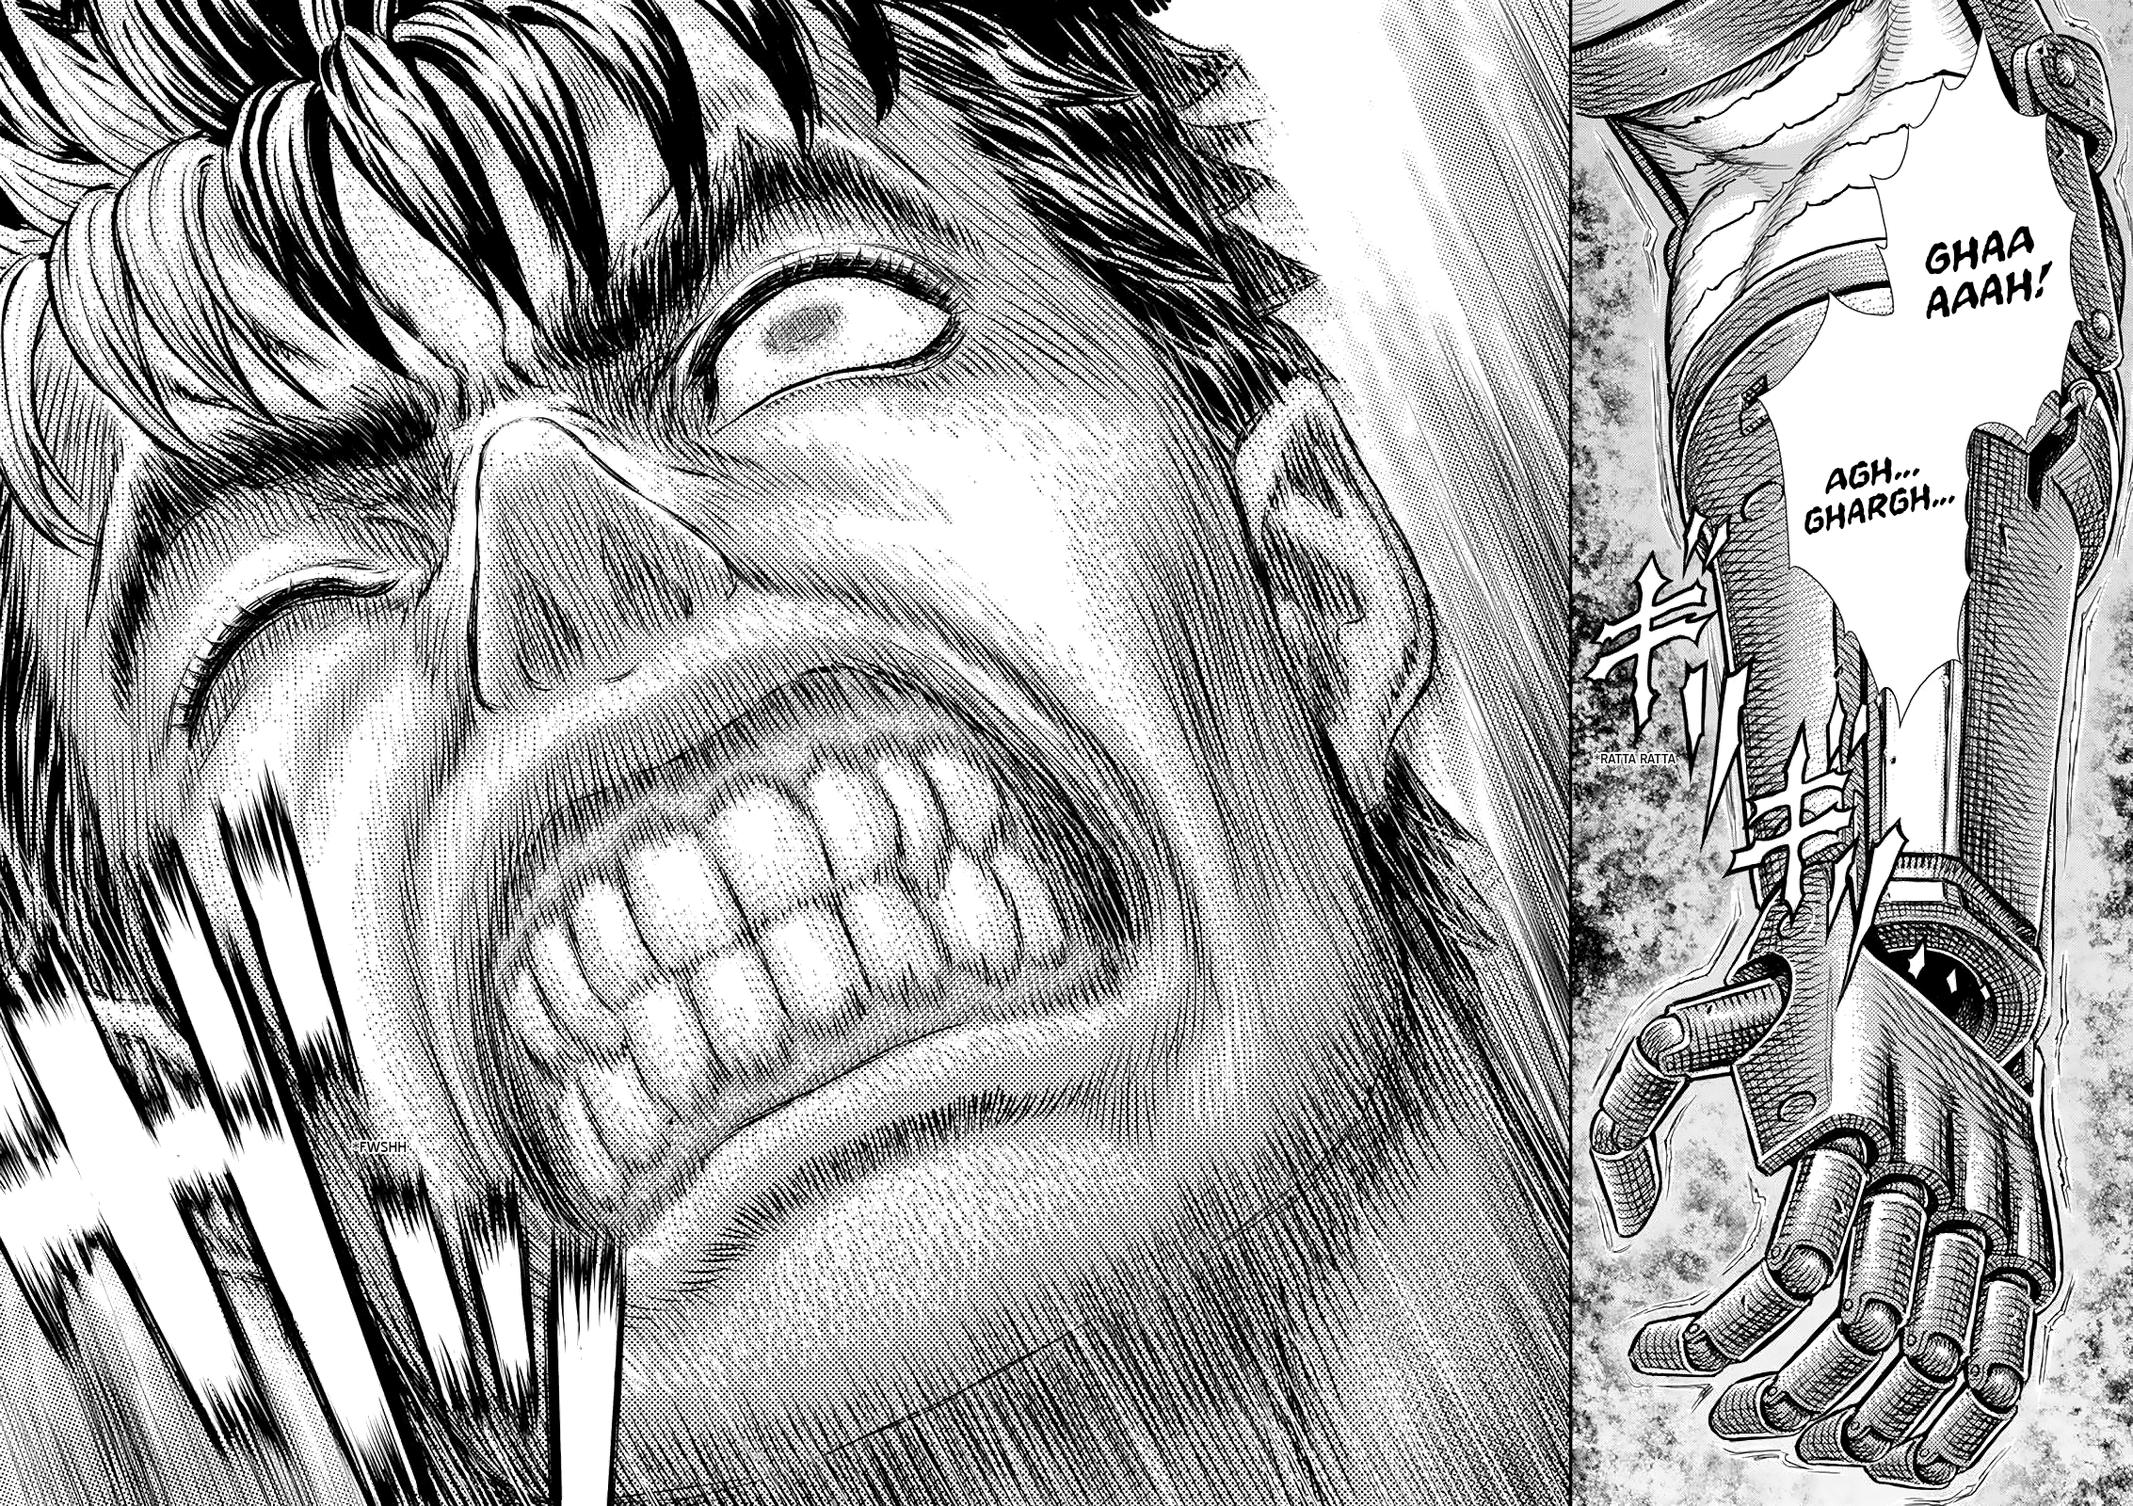 Berserk Manga Chapter 365 image 13